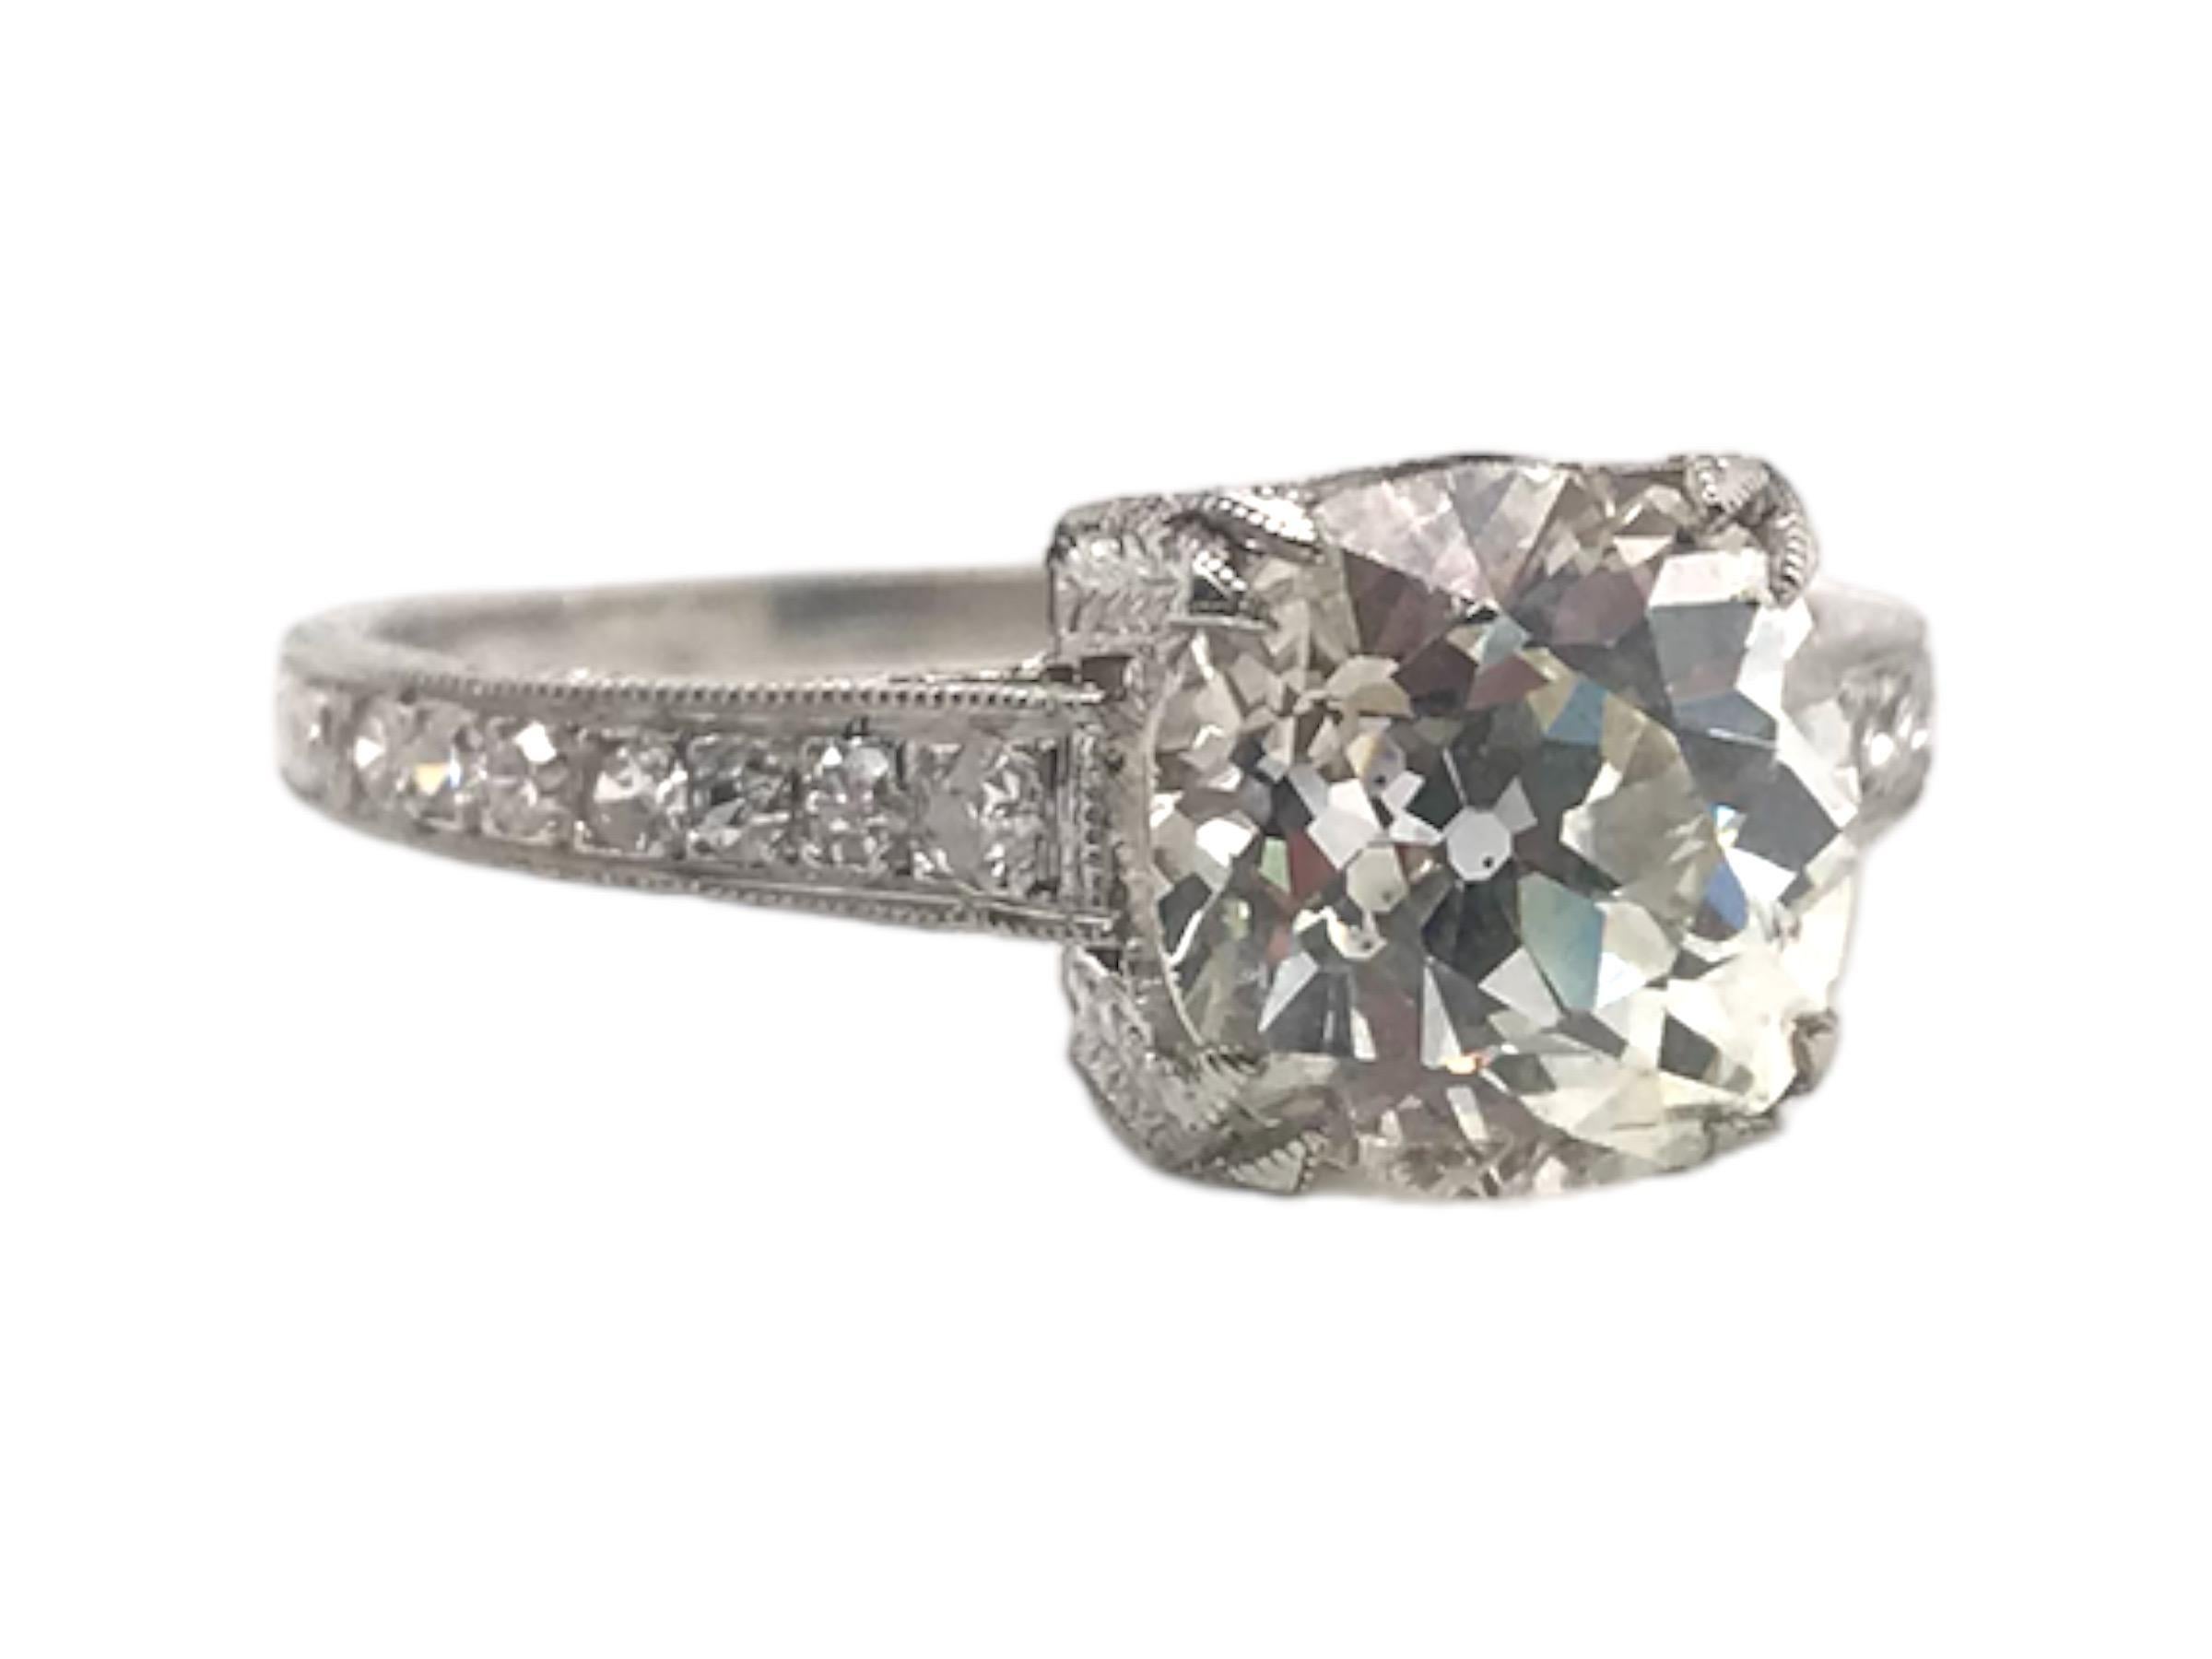 Wir lieben Verlobungsringe im Solitär-Stil im Vintage-Stil!
Diese Schönheit ist keine Ausnahme!
Dieser schöne Ring ist in tadellosem Zustand und ist mit feinen Gravur Details und subtilen Diamanten Akzente akzentuiert.

Diamant Details
Schnitt: Alte